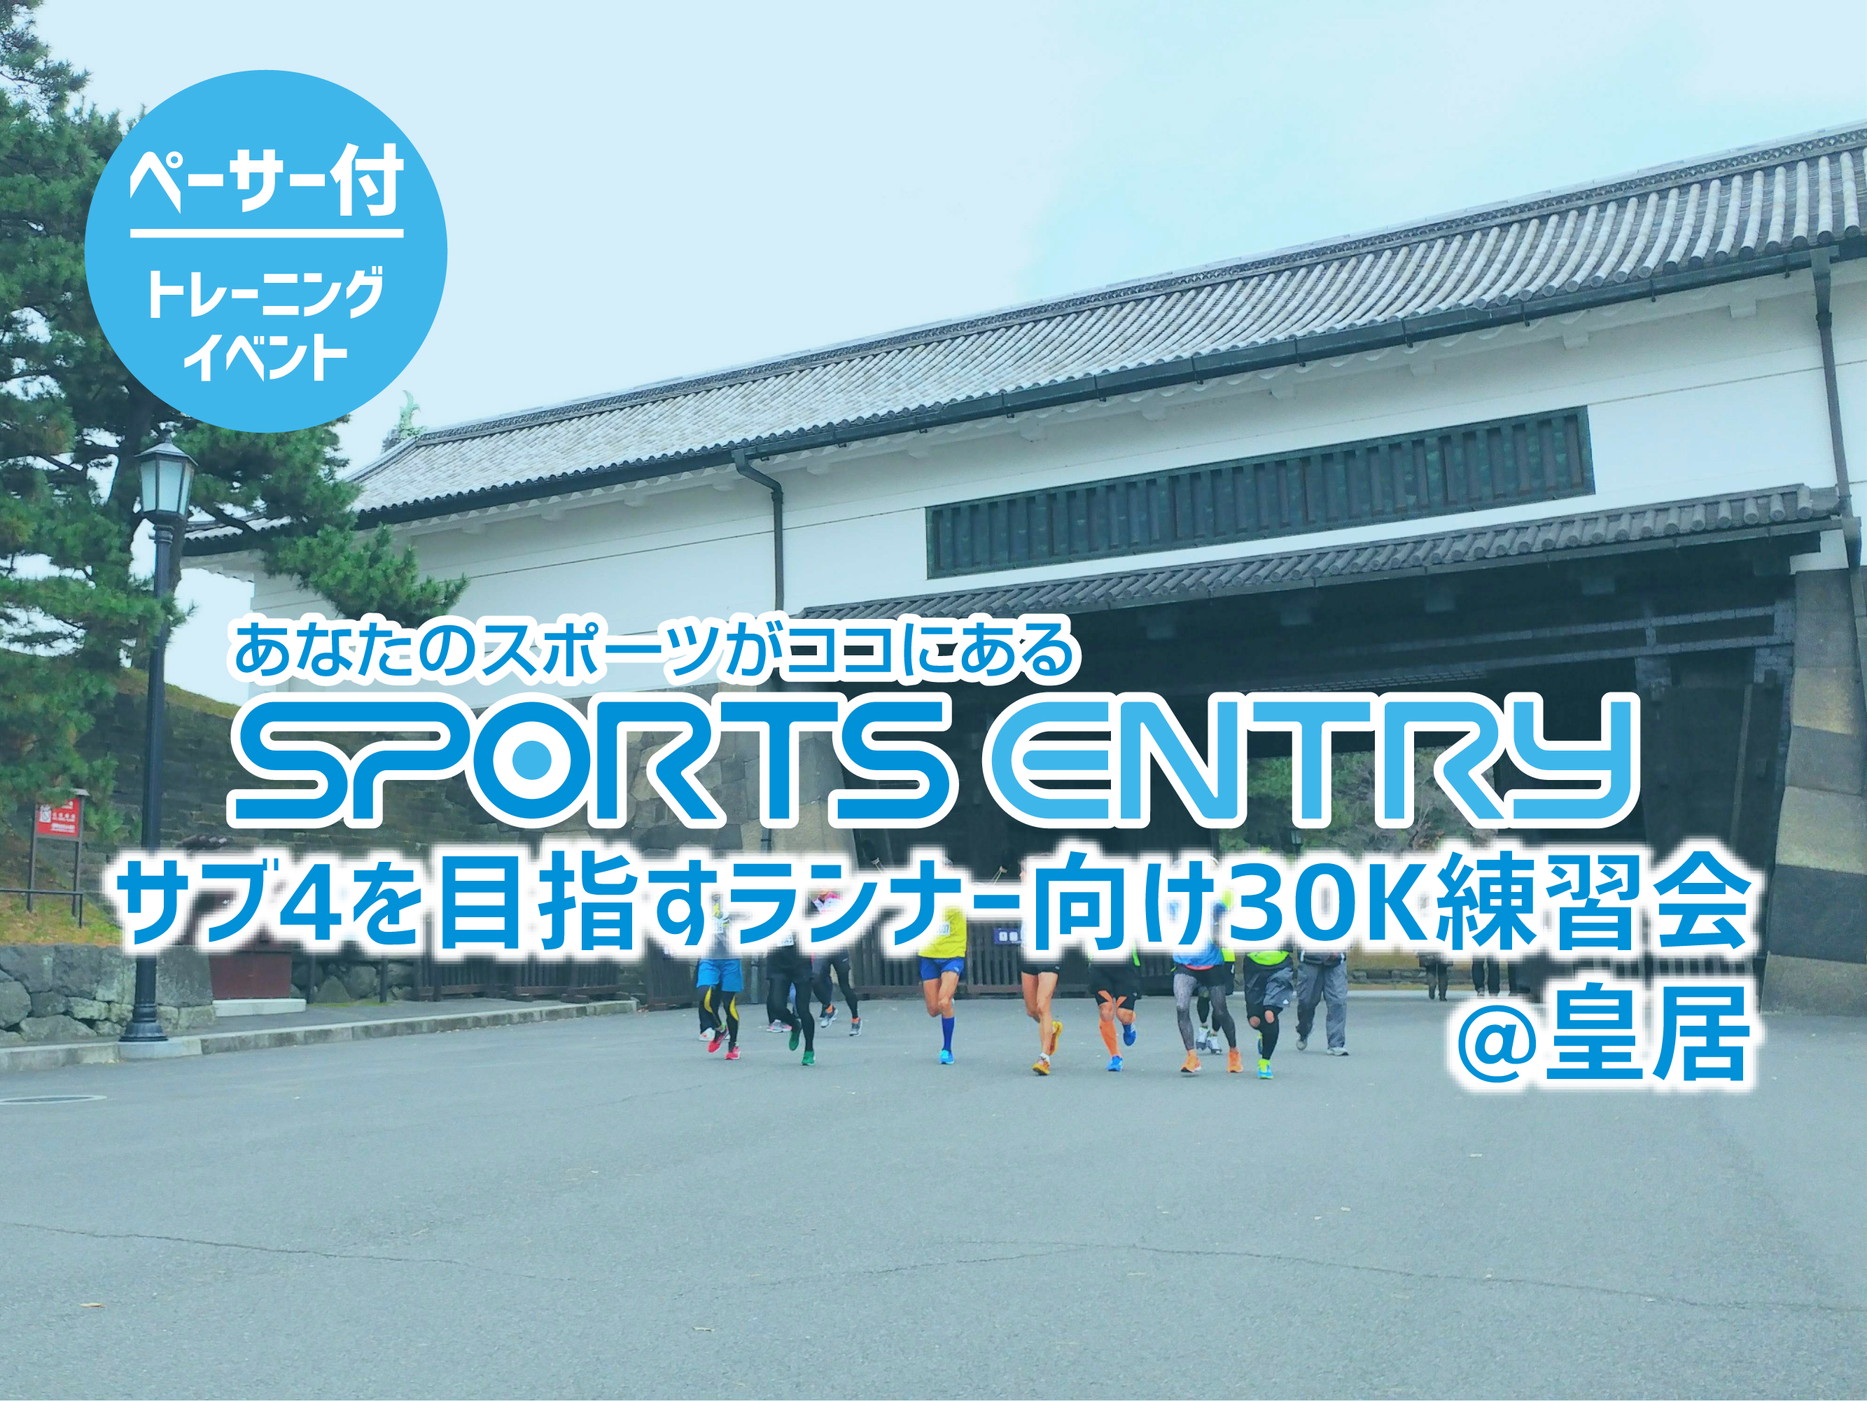  スポーツエントリー企画 サブ4を目指すランナー向け30K練習会【4月17日】 